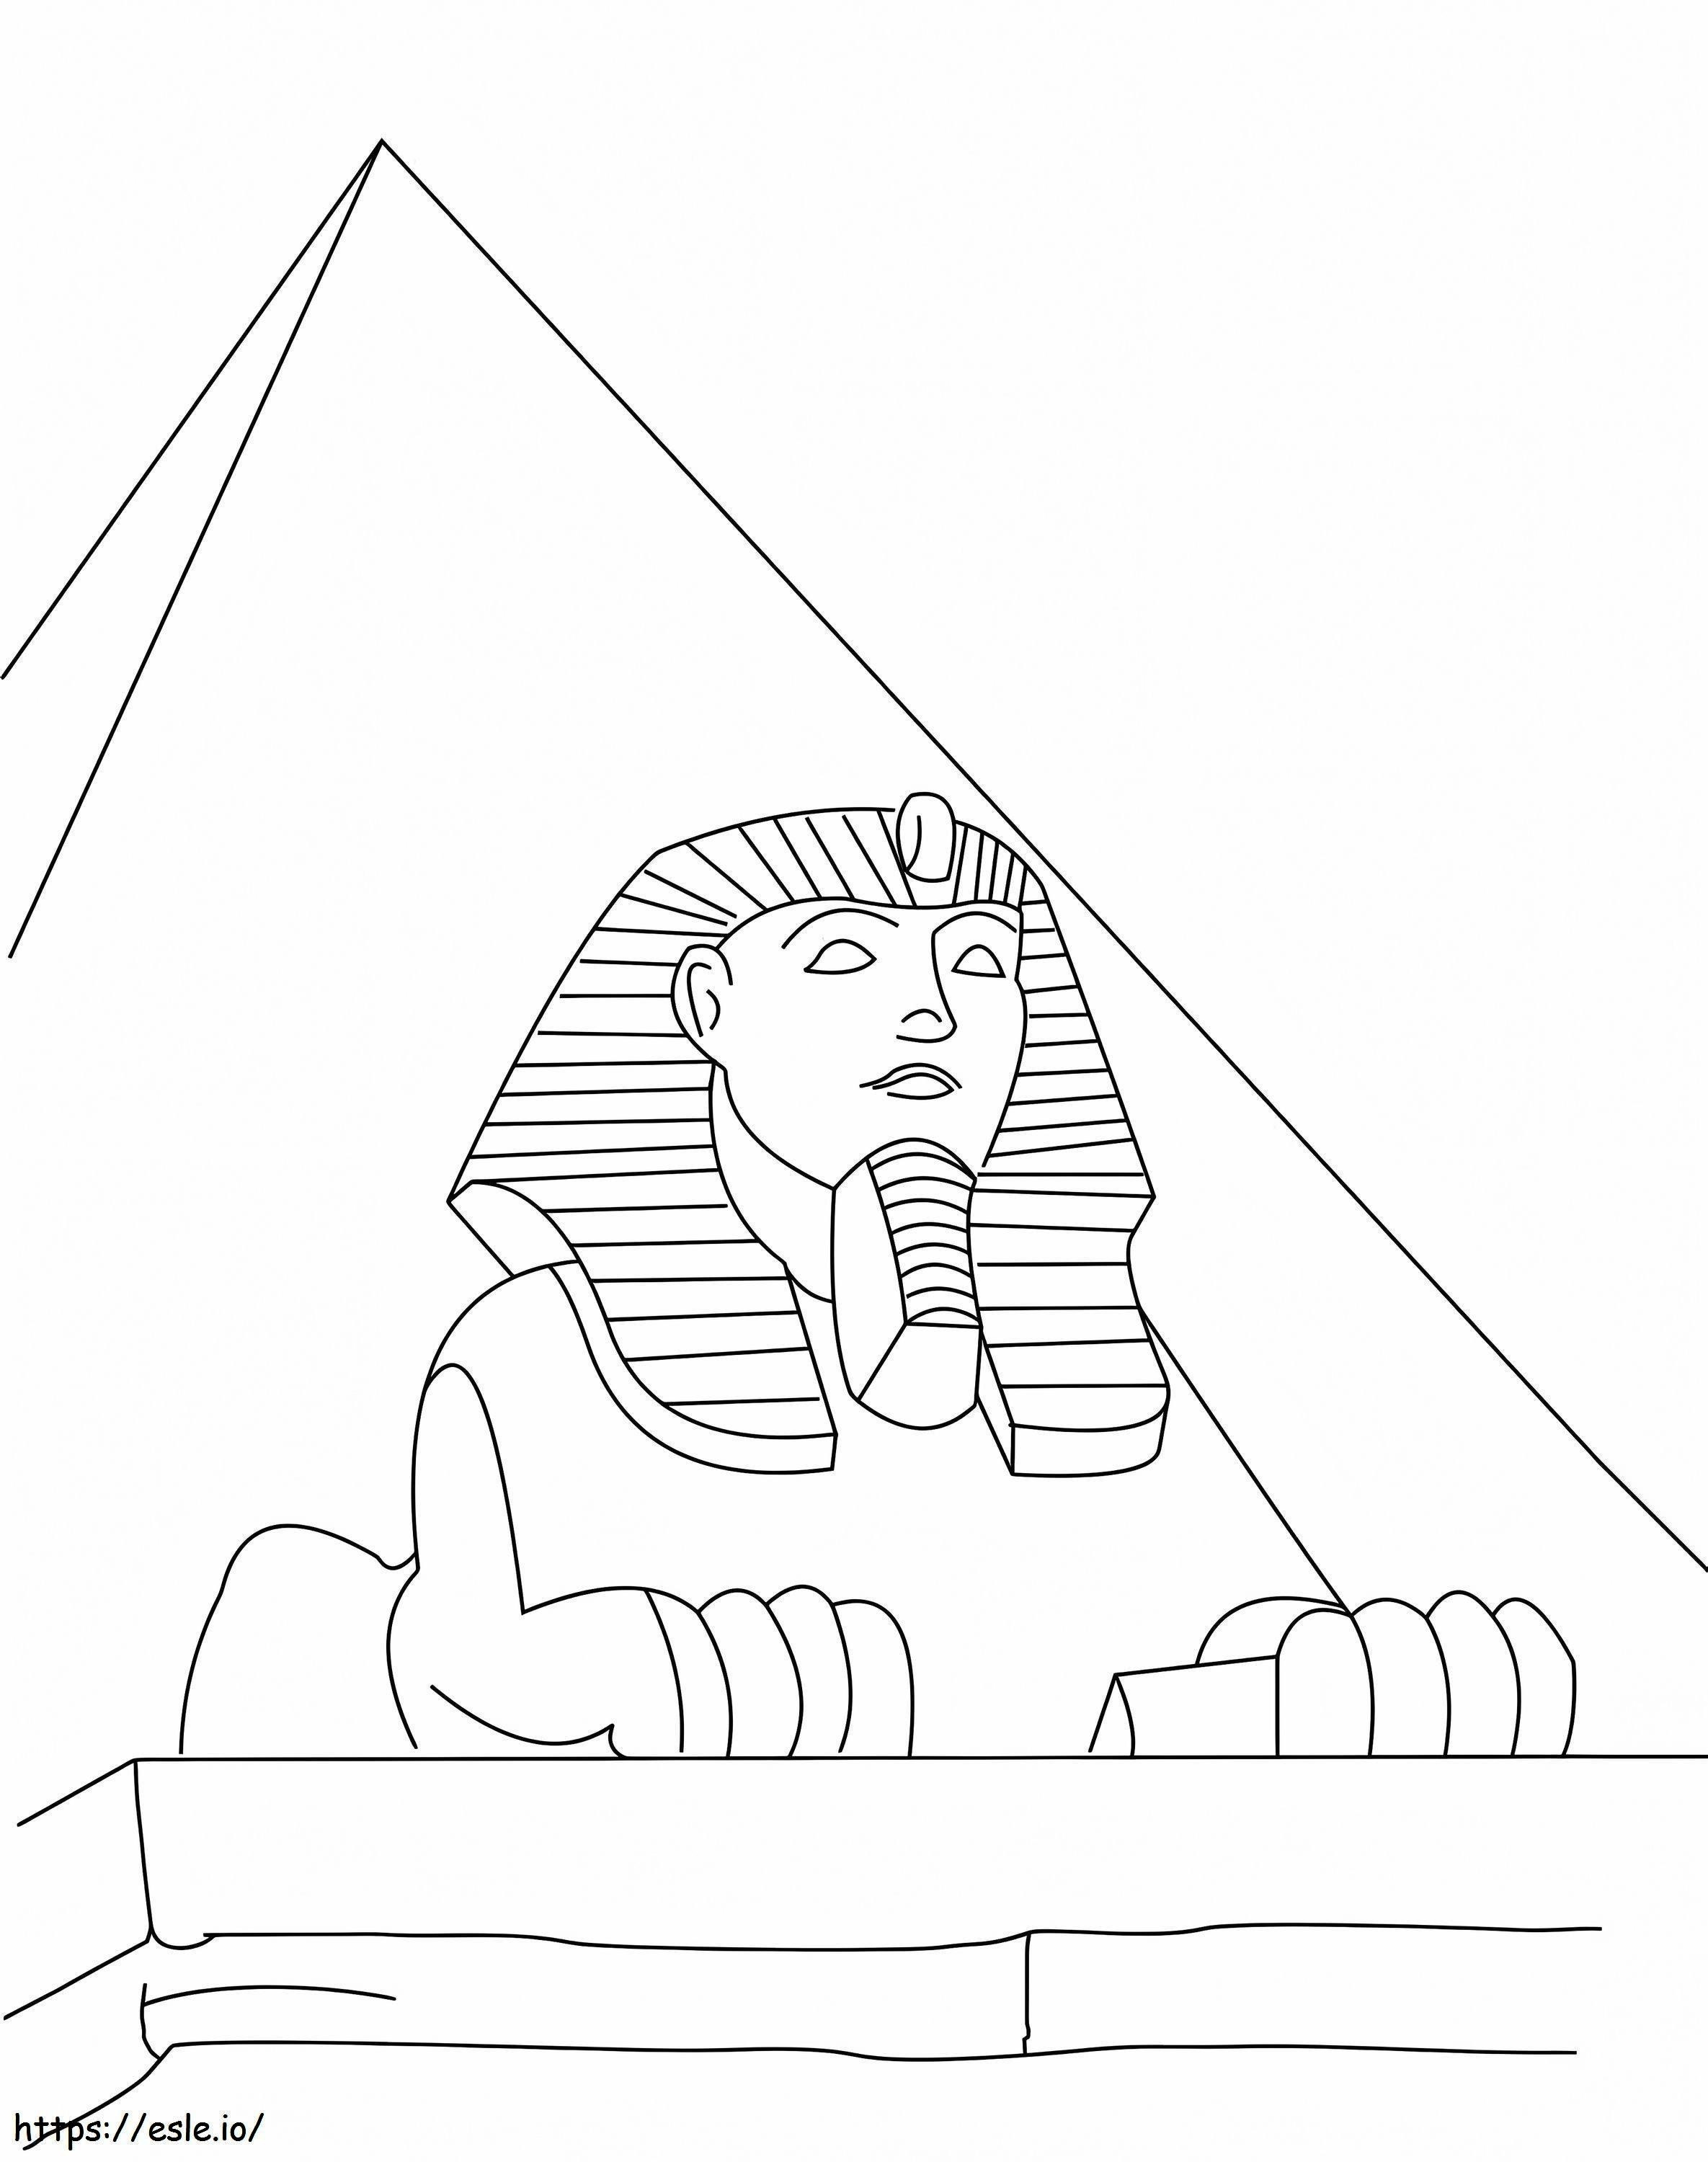 1542941189 3350 29315 Sphinks Mesir Gambar Mewarnai